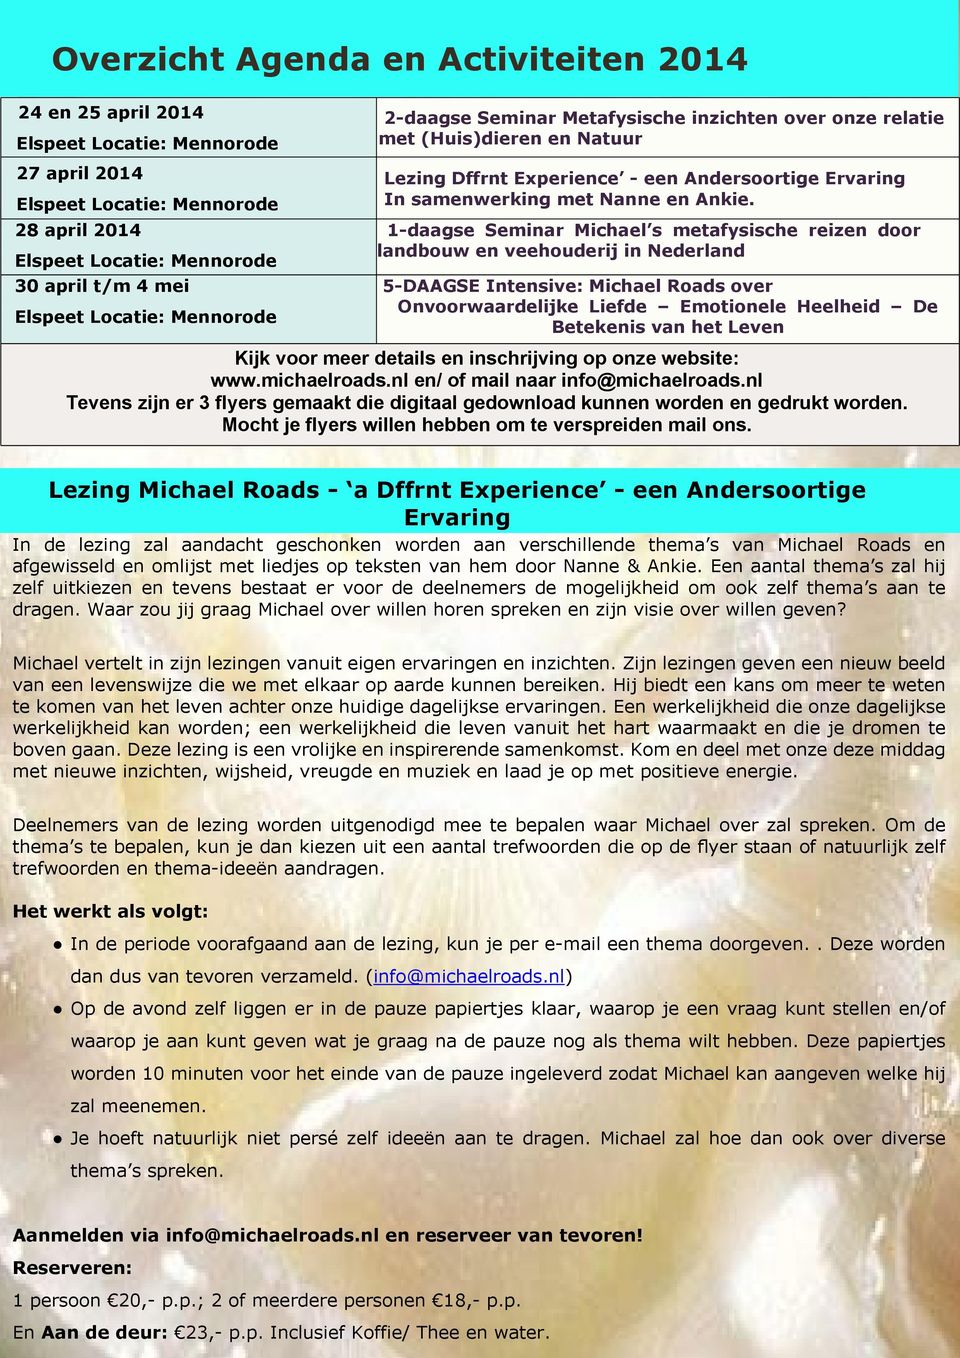 1-daagse Seminar Michael s metafysische reizen door landbouw en veehouderij in Nederland 5-DAAGSE Intensive: Michael Roads over Onvoorwaardelijke Liefde Emotionele Heelheid De Betekenis van het Leven